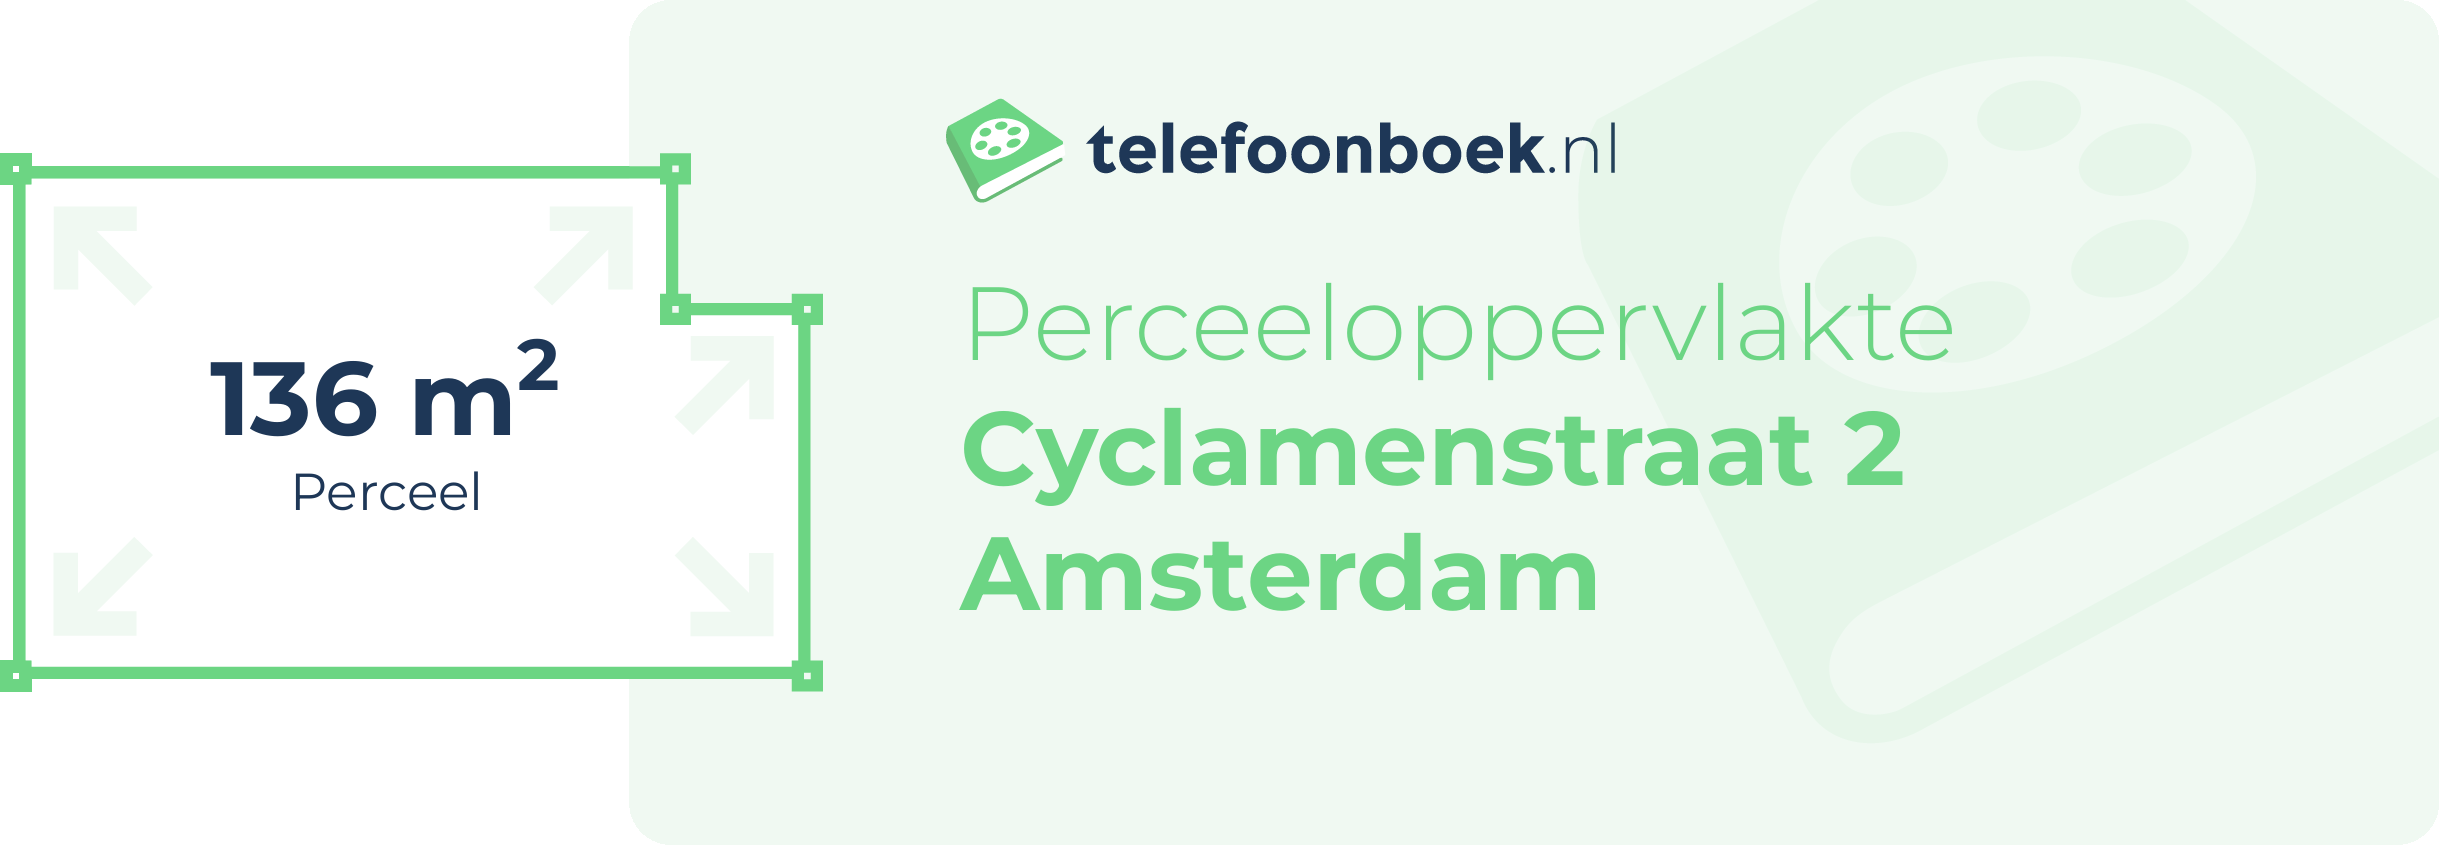 Perceeloppervlakte Cyclamenstraat 2 Amsterdam